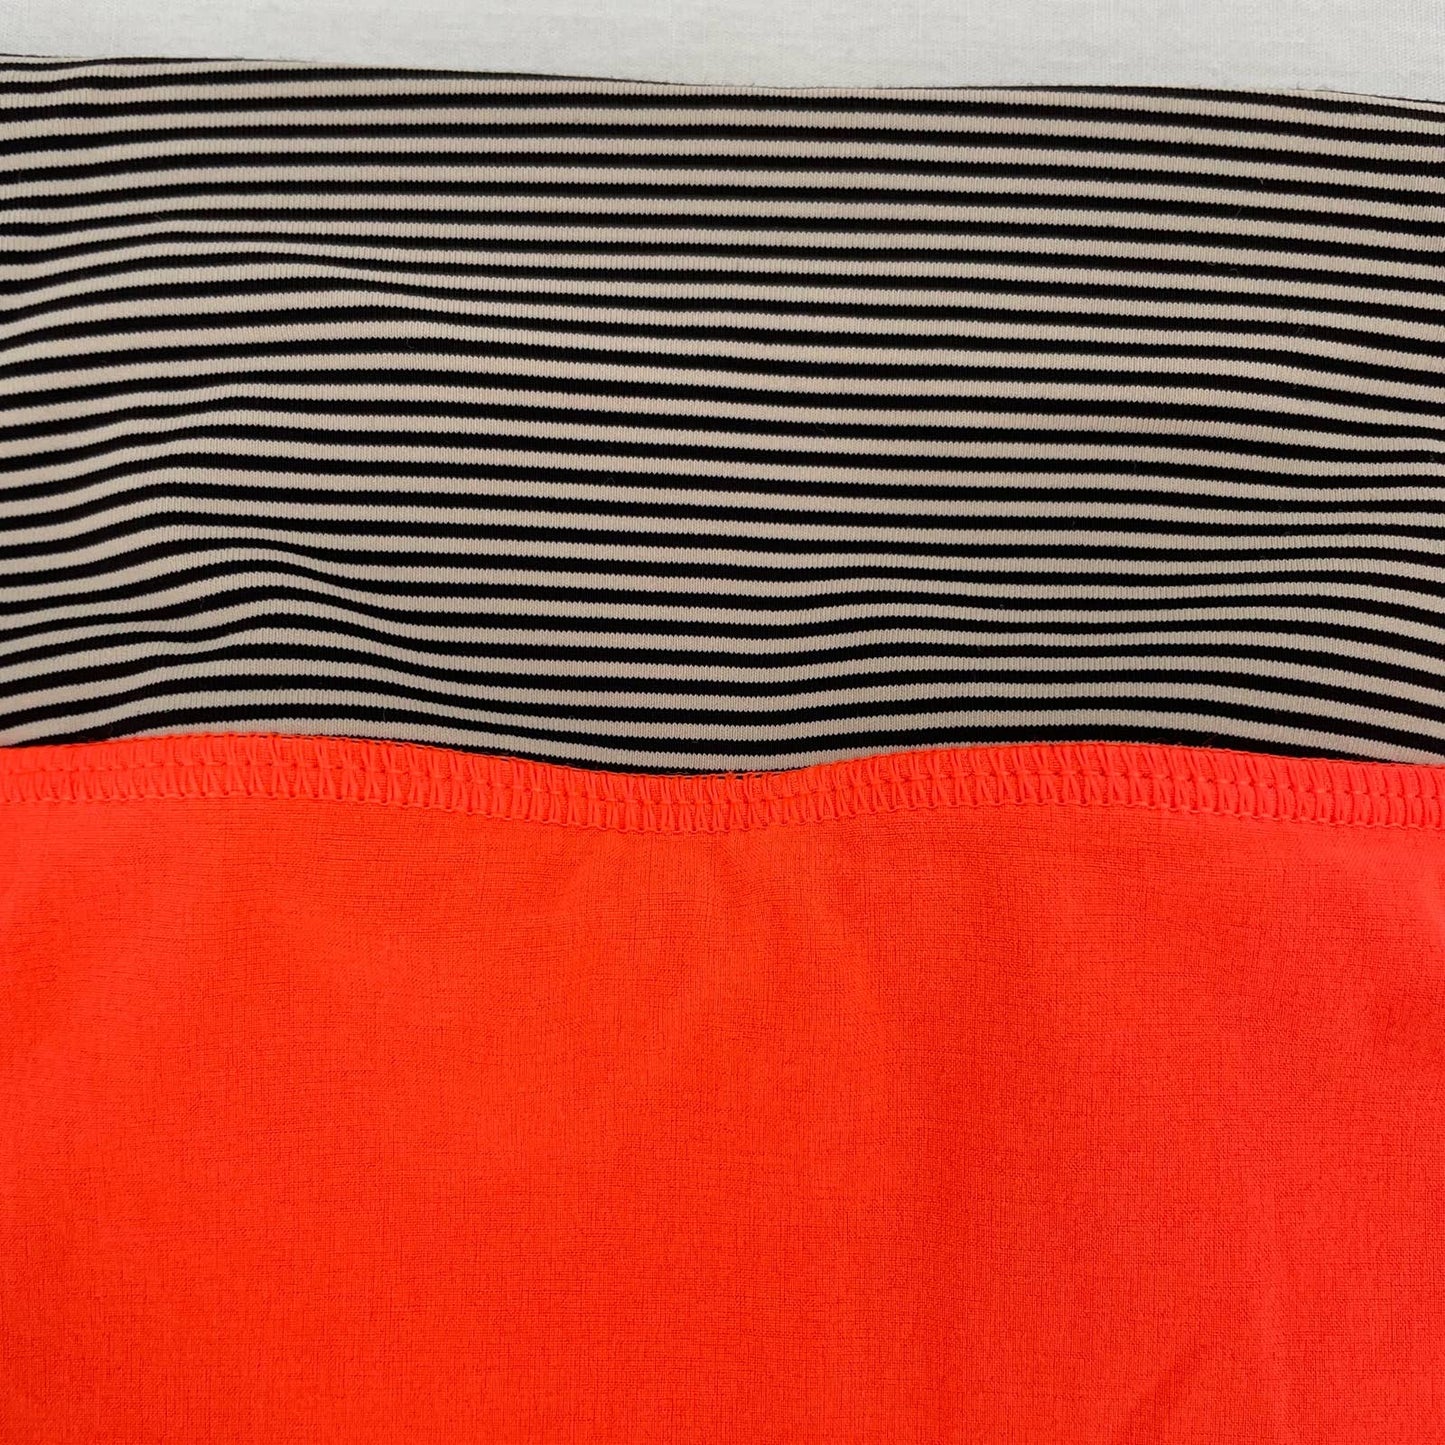 Lululemon Pace Setter Skirt Light Flare Tonka Stripe Cashew Blaze Orange Tennis Skort Size 6